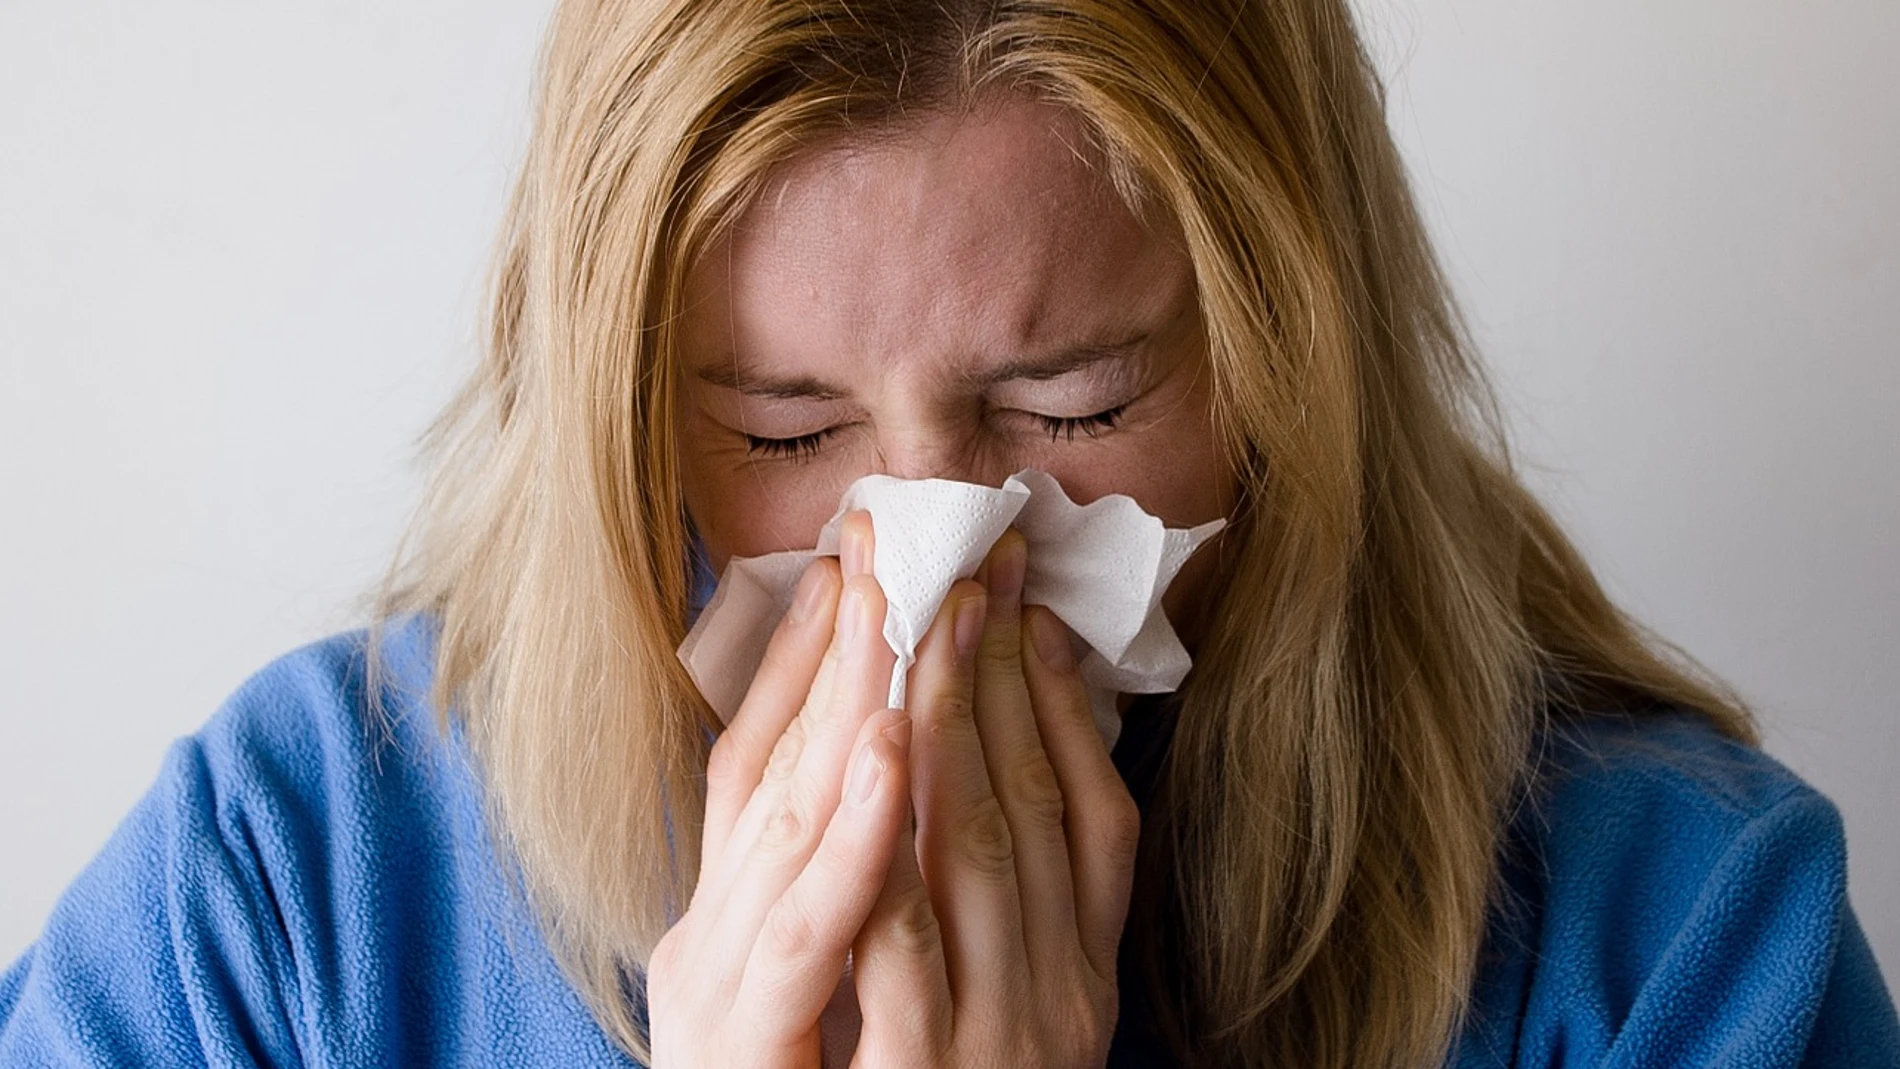 Los estornudos, el síntoma que causa dudas entre coronavirus y gripe